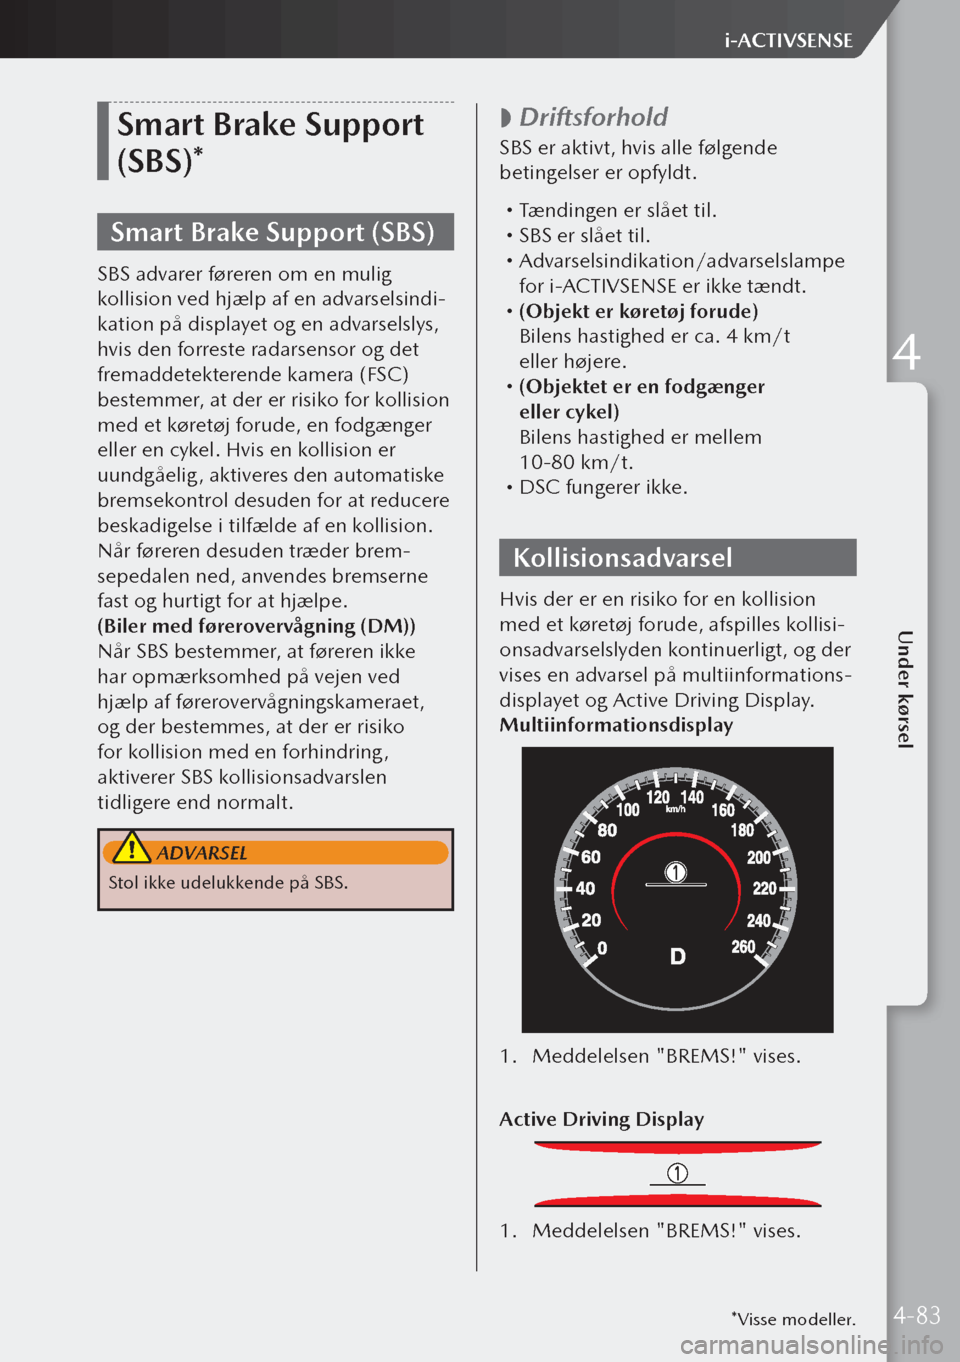 MAZDA MODEL 3 HATCHBACK 2019  Instruktionsbog (in Danish) Smart Brake Support 
(SBS)*
Smart Brake Support (SBS)
SBS advarer føreren om en mulig 
kollision ved hjælp af en advarselsindi-
kation på displayet og en advarselslys, 
hvis den forreste radarsenso